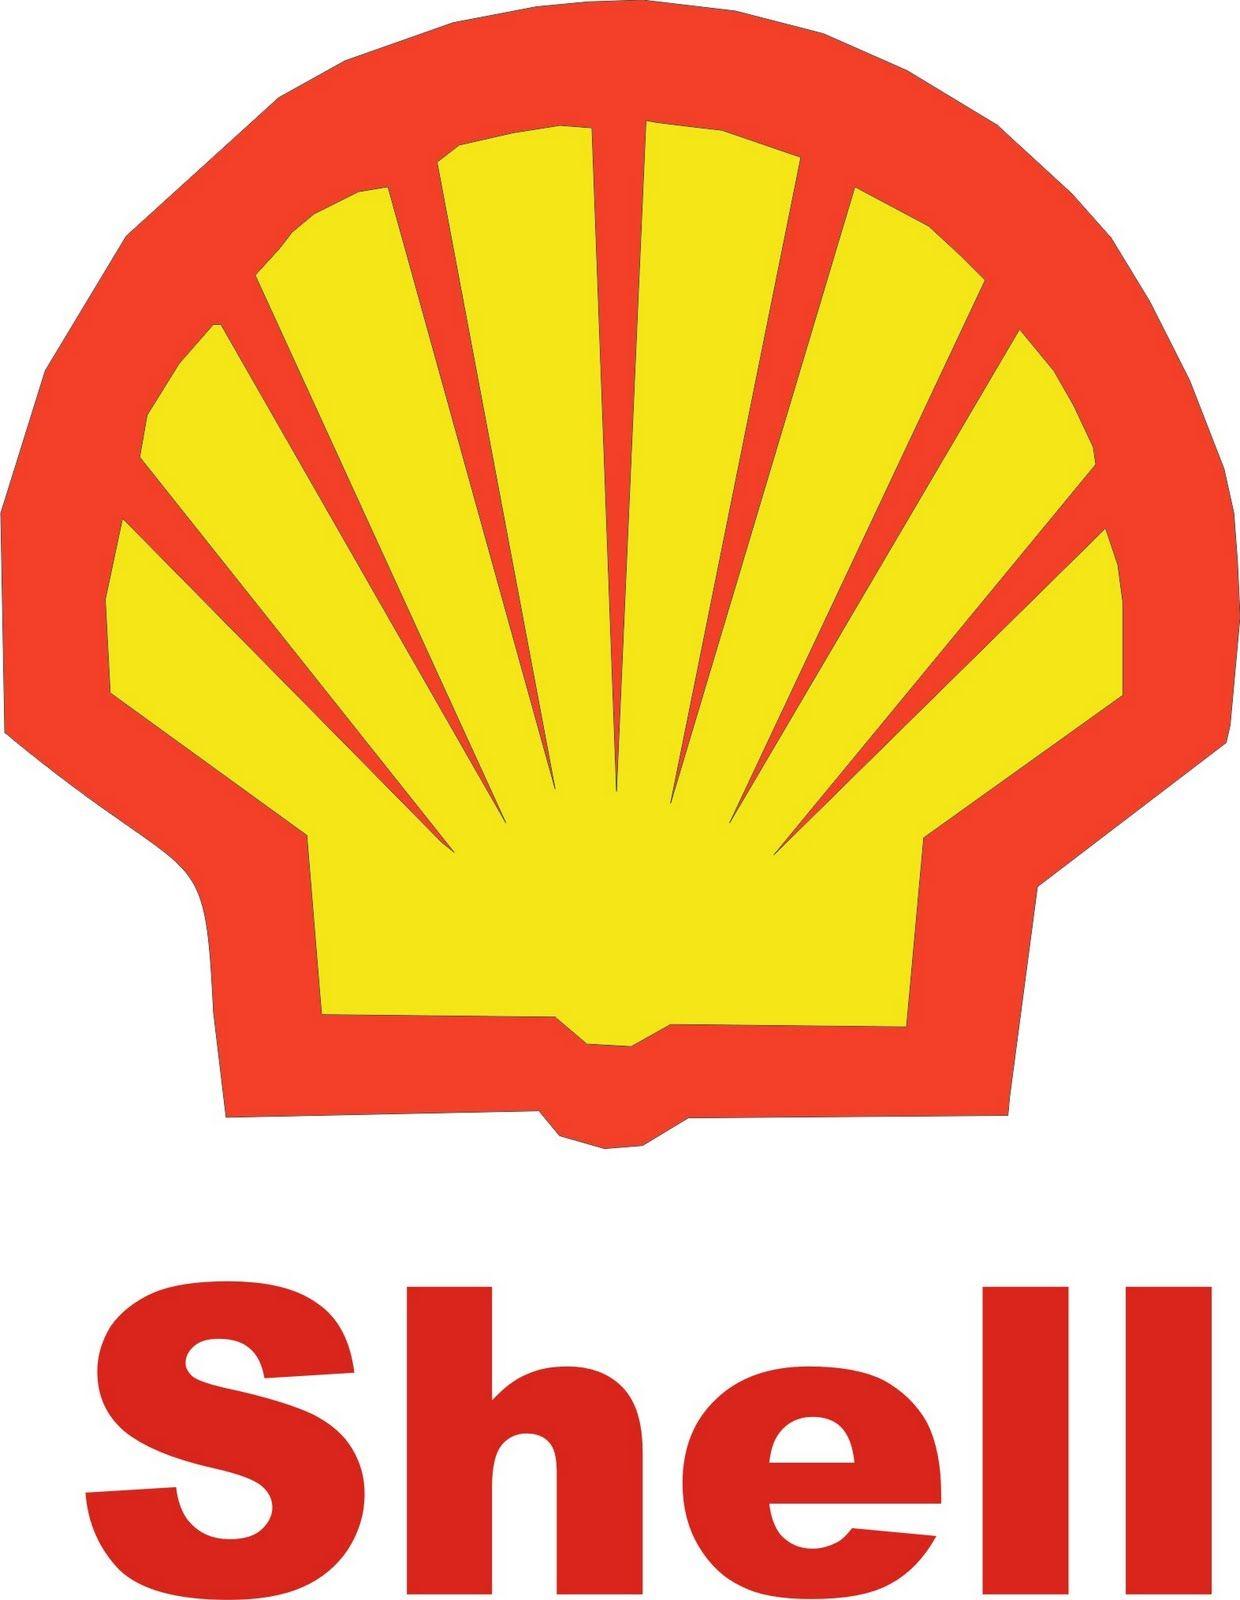 Descriptive Logo - descriptive logo 10 | Descriptive Logos | Royal dutch shell, Shell ...